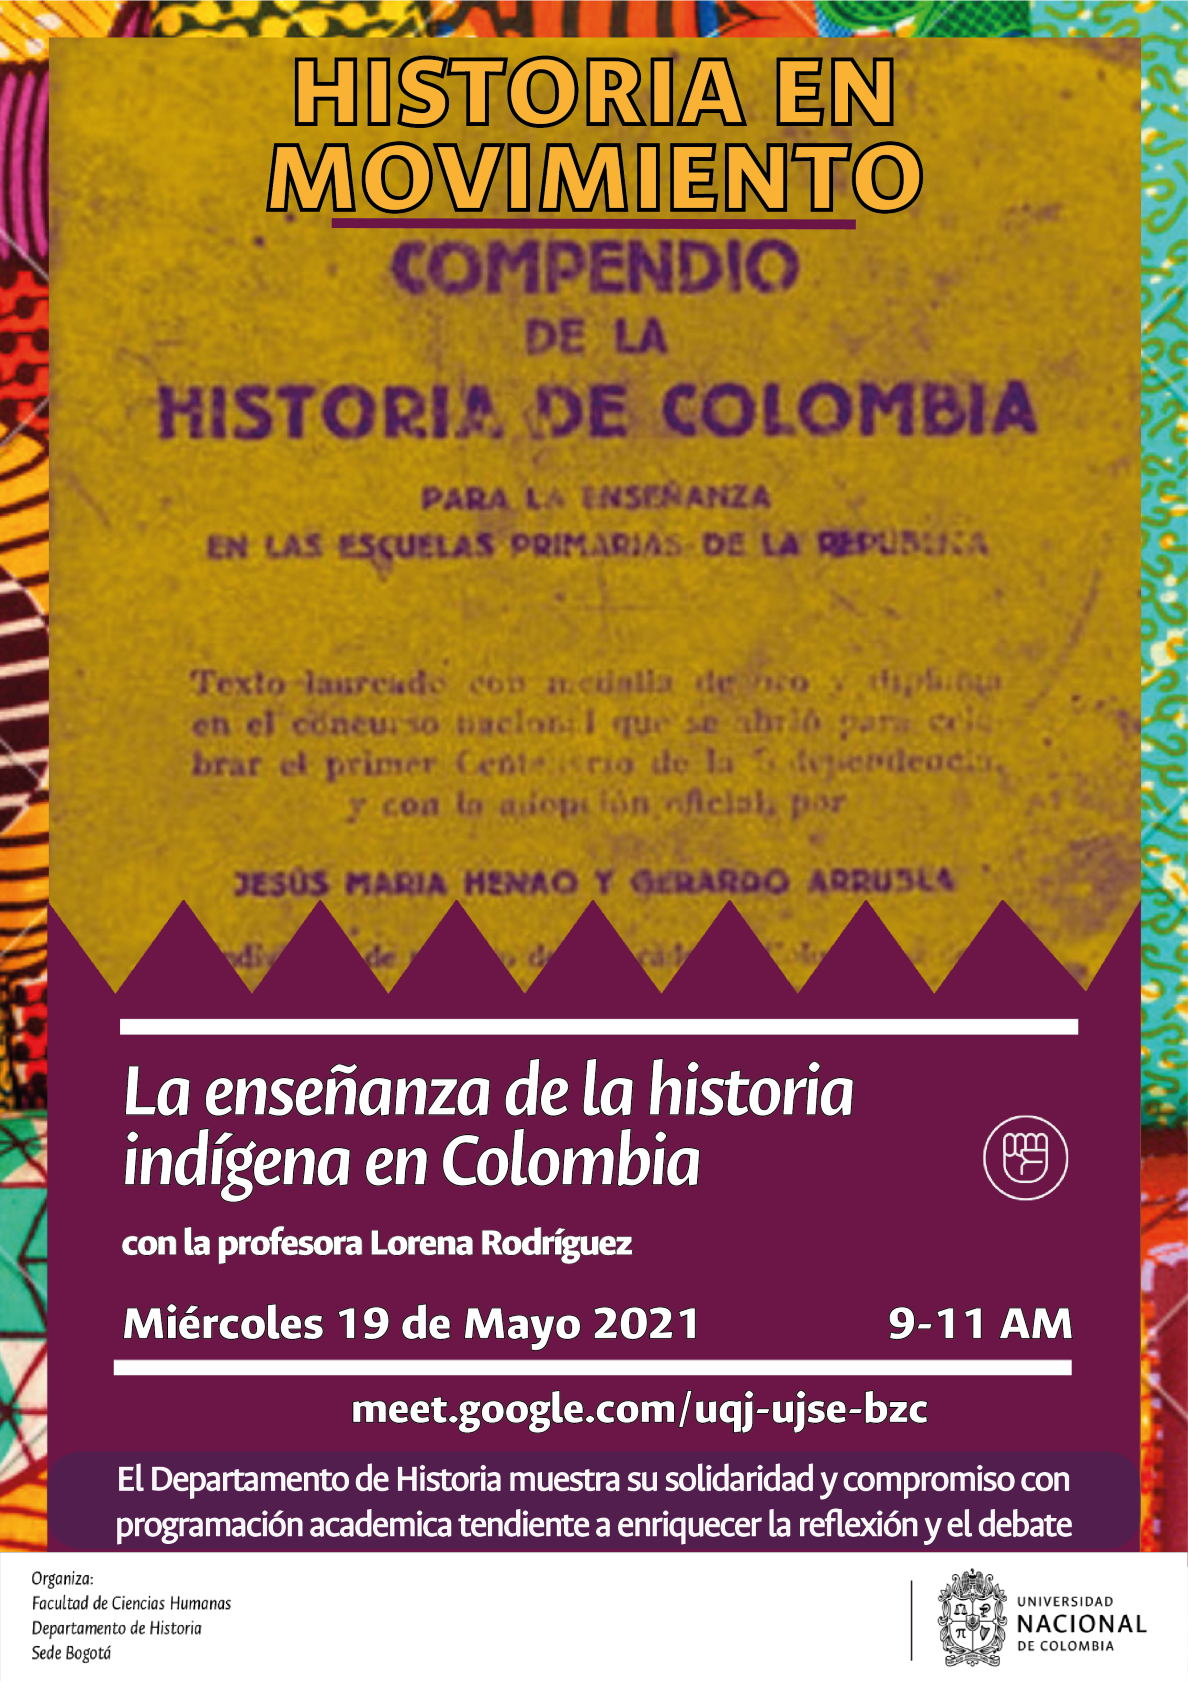 La enseñanza de la historia indígena en Colombia